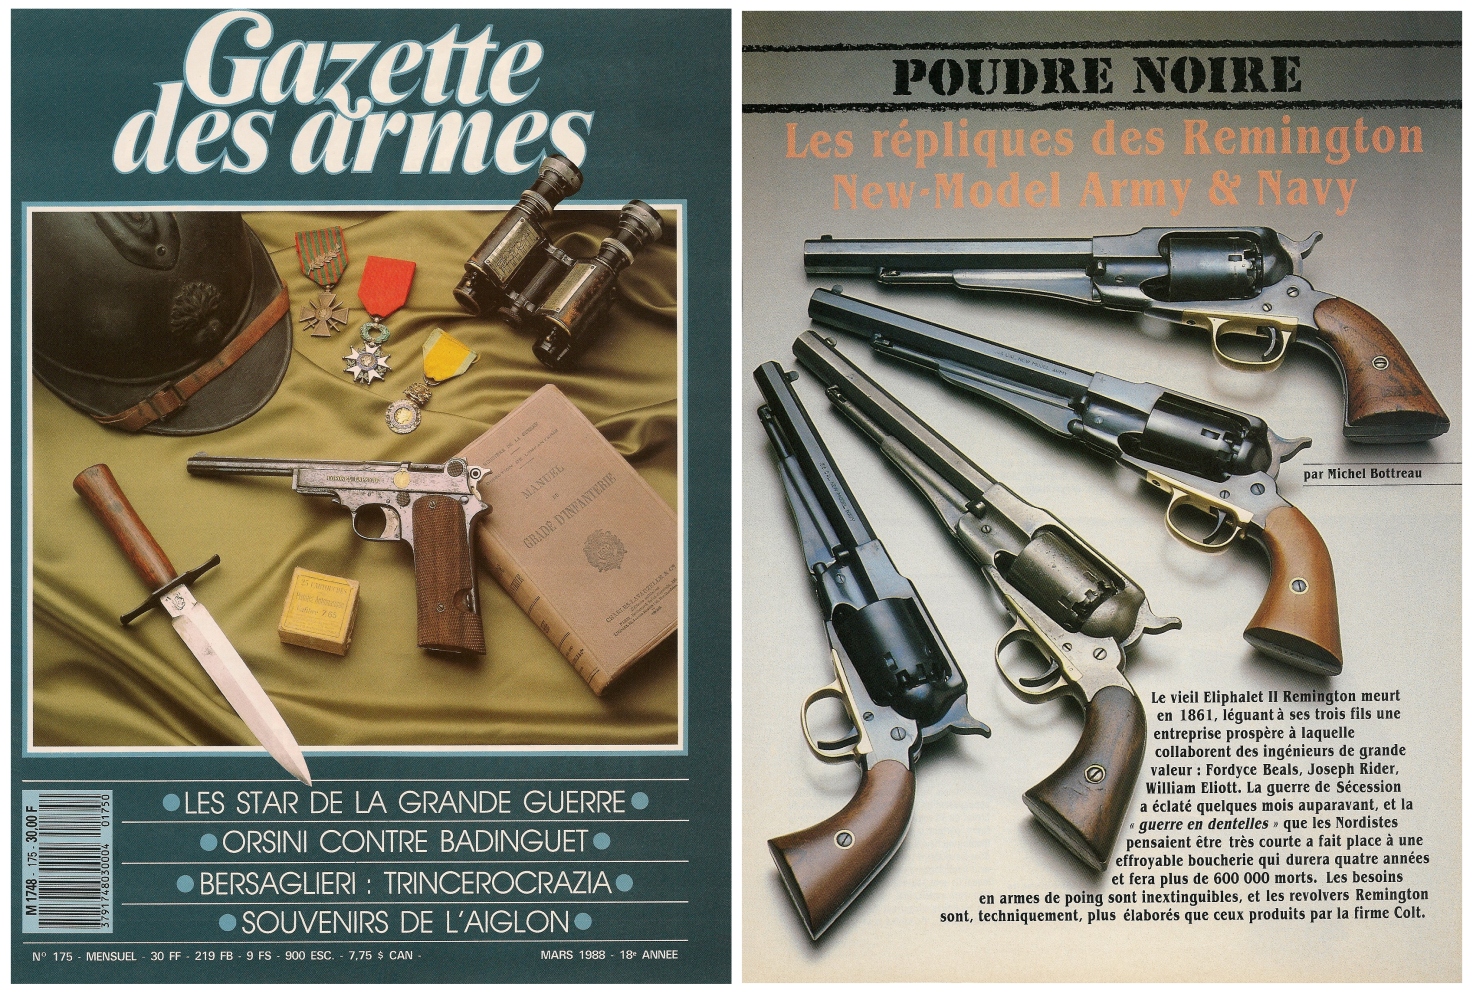 Le banc d’essai des répliques des revolvers Remington New Model Army & New Model Navy a été publié sur 5 pages dans le magazine Gazette des Armes n°175 (mars 1988).